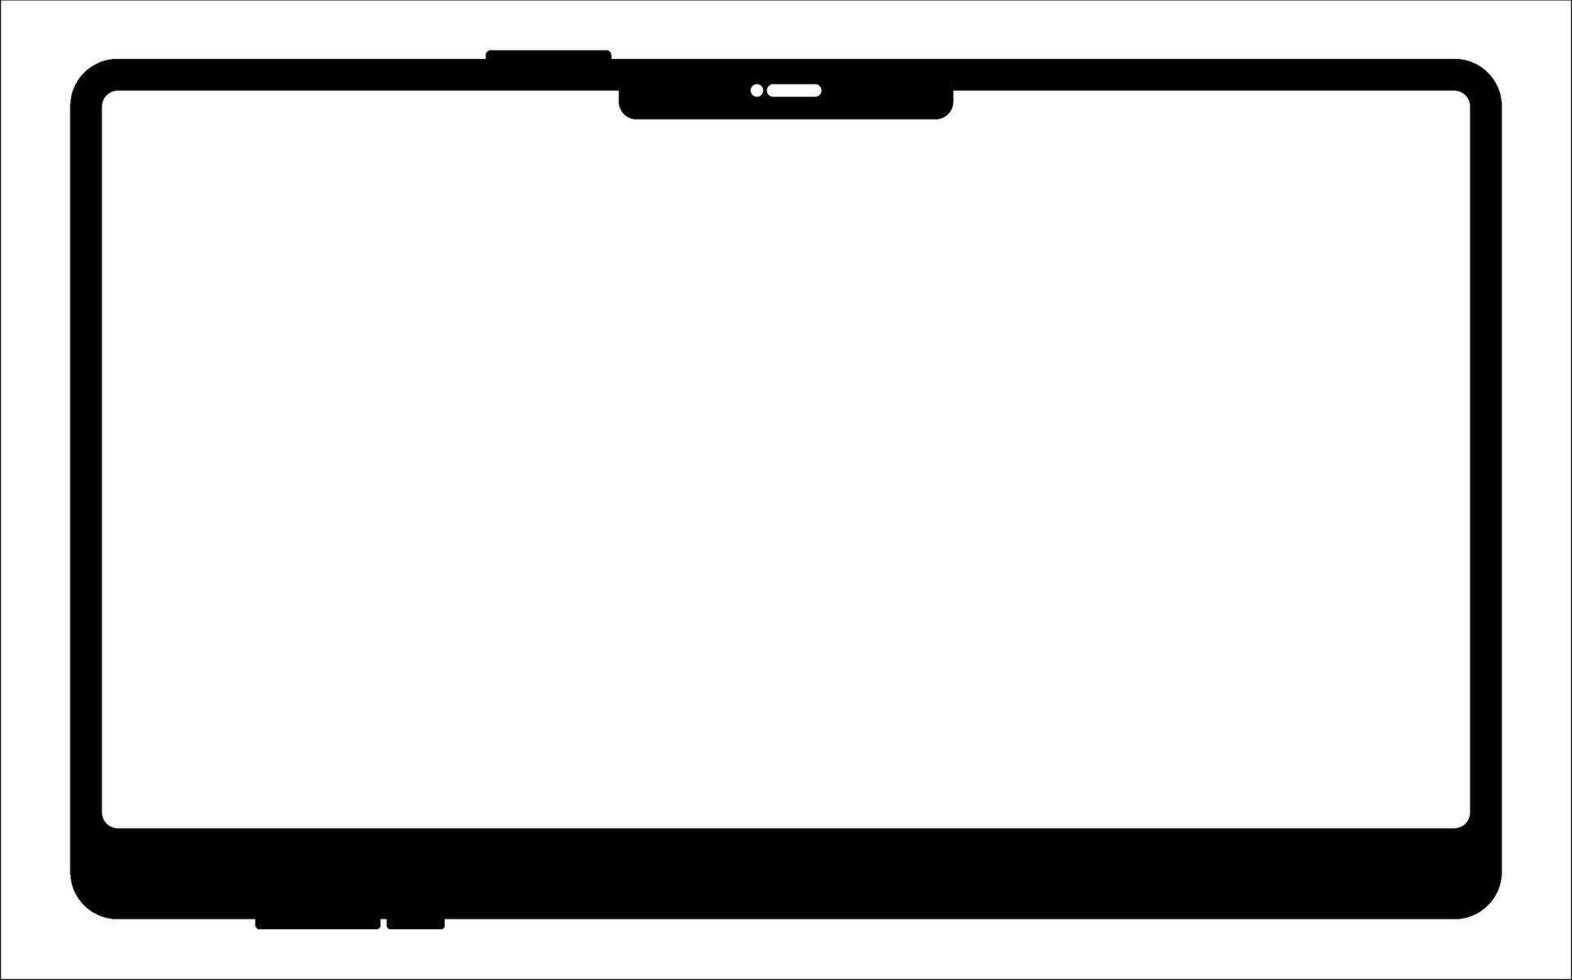 em branco tela tábua quadro, disposição do uma universal conjunto do dispositivos. interface do usuário, tábua brincar para ux para infográficos ou apresentações. vetor